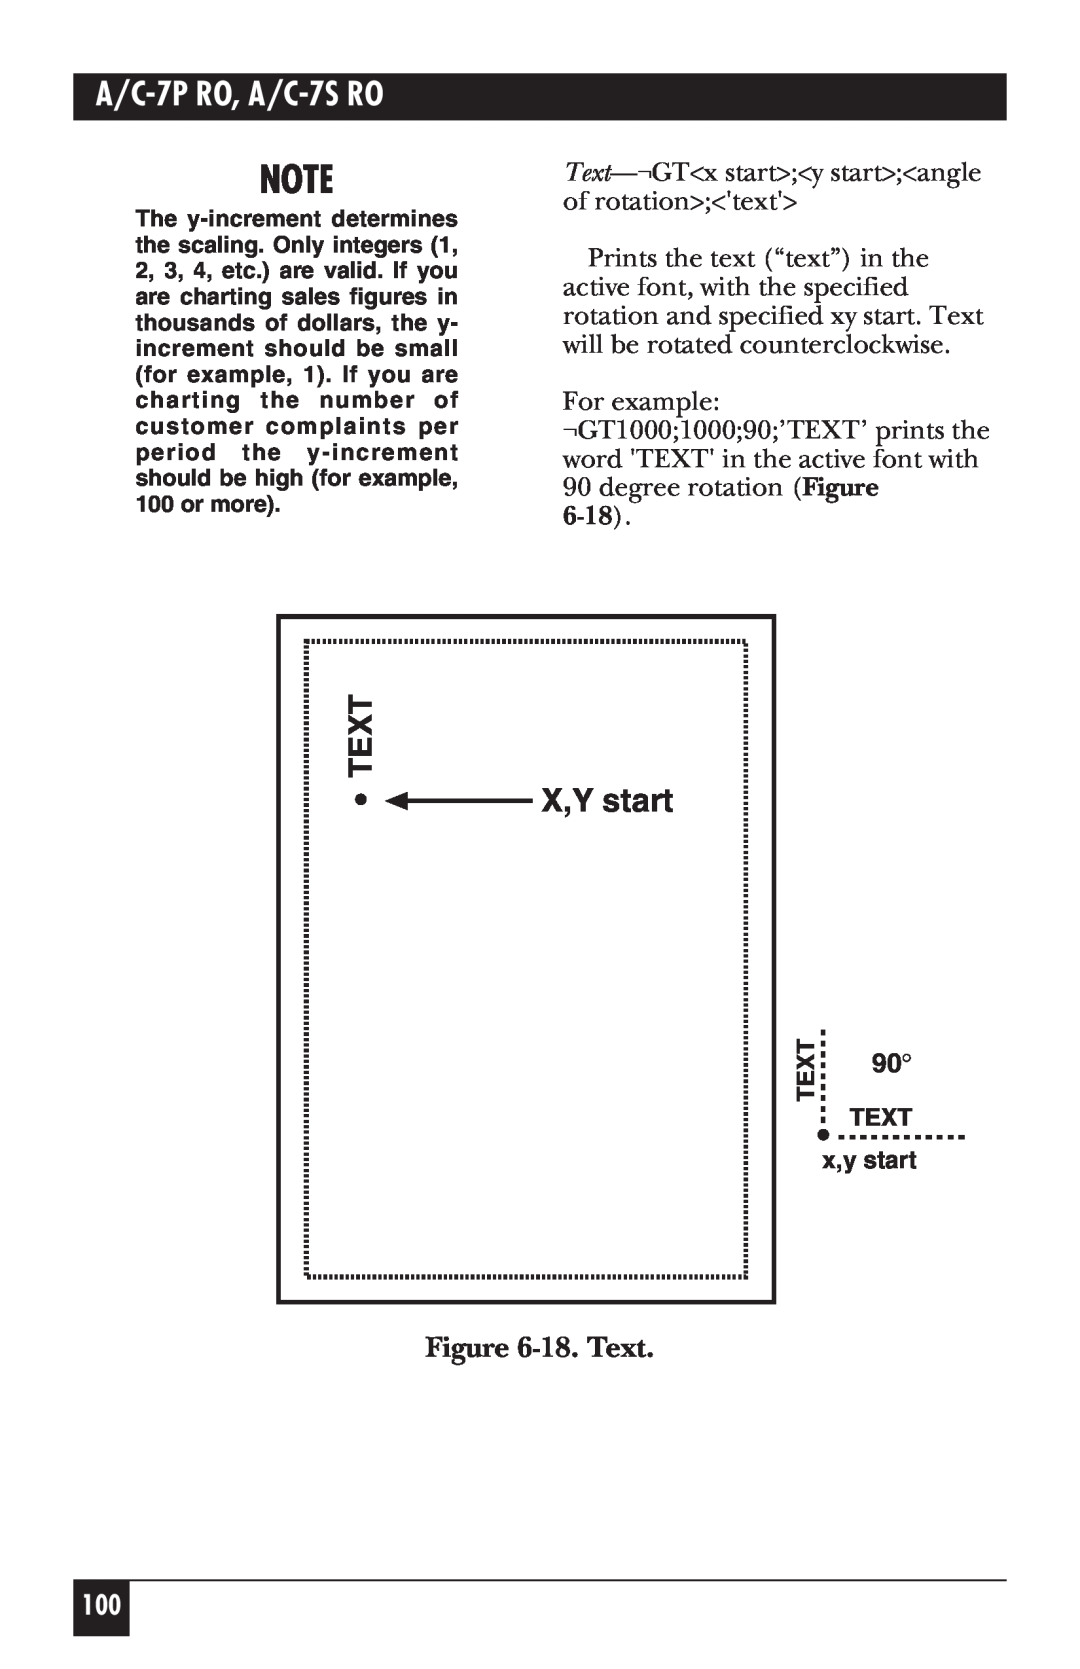 Black Box manual 18. Text, 6-18, A/C-7P RO, A/C-7S RO, X,Y start 